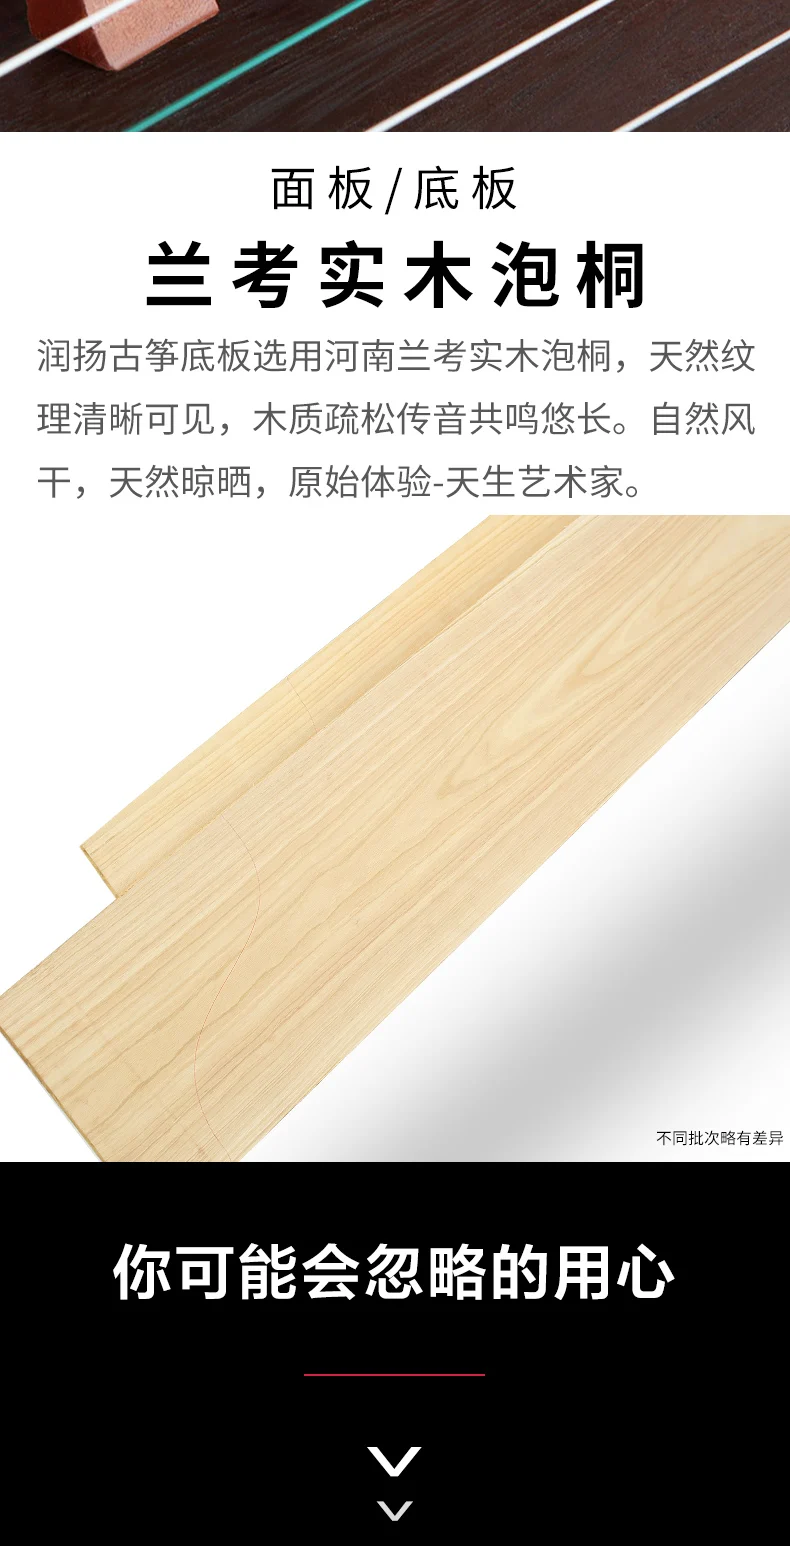 Профессиональный 21 струнный китайский zither высокое качество wutong дерево guzheng Китайский традиционный музыкальный инструмент gu zheng zither